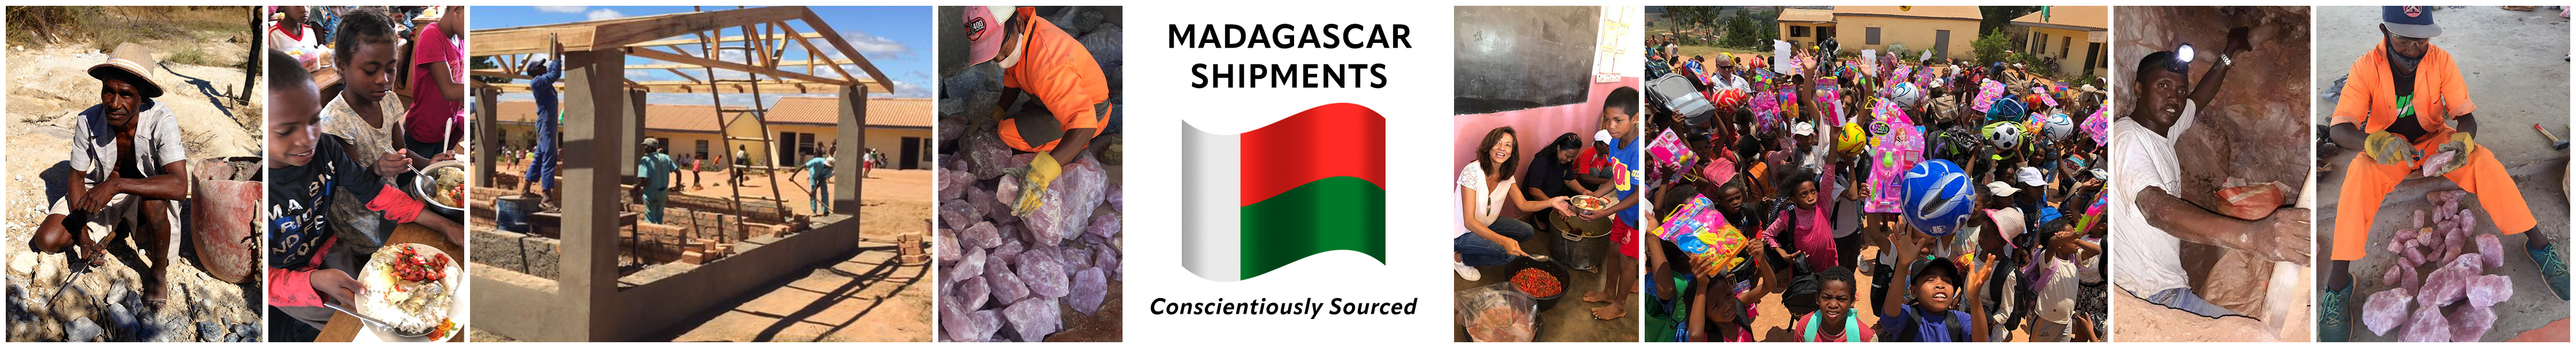 Madagascar Shipments